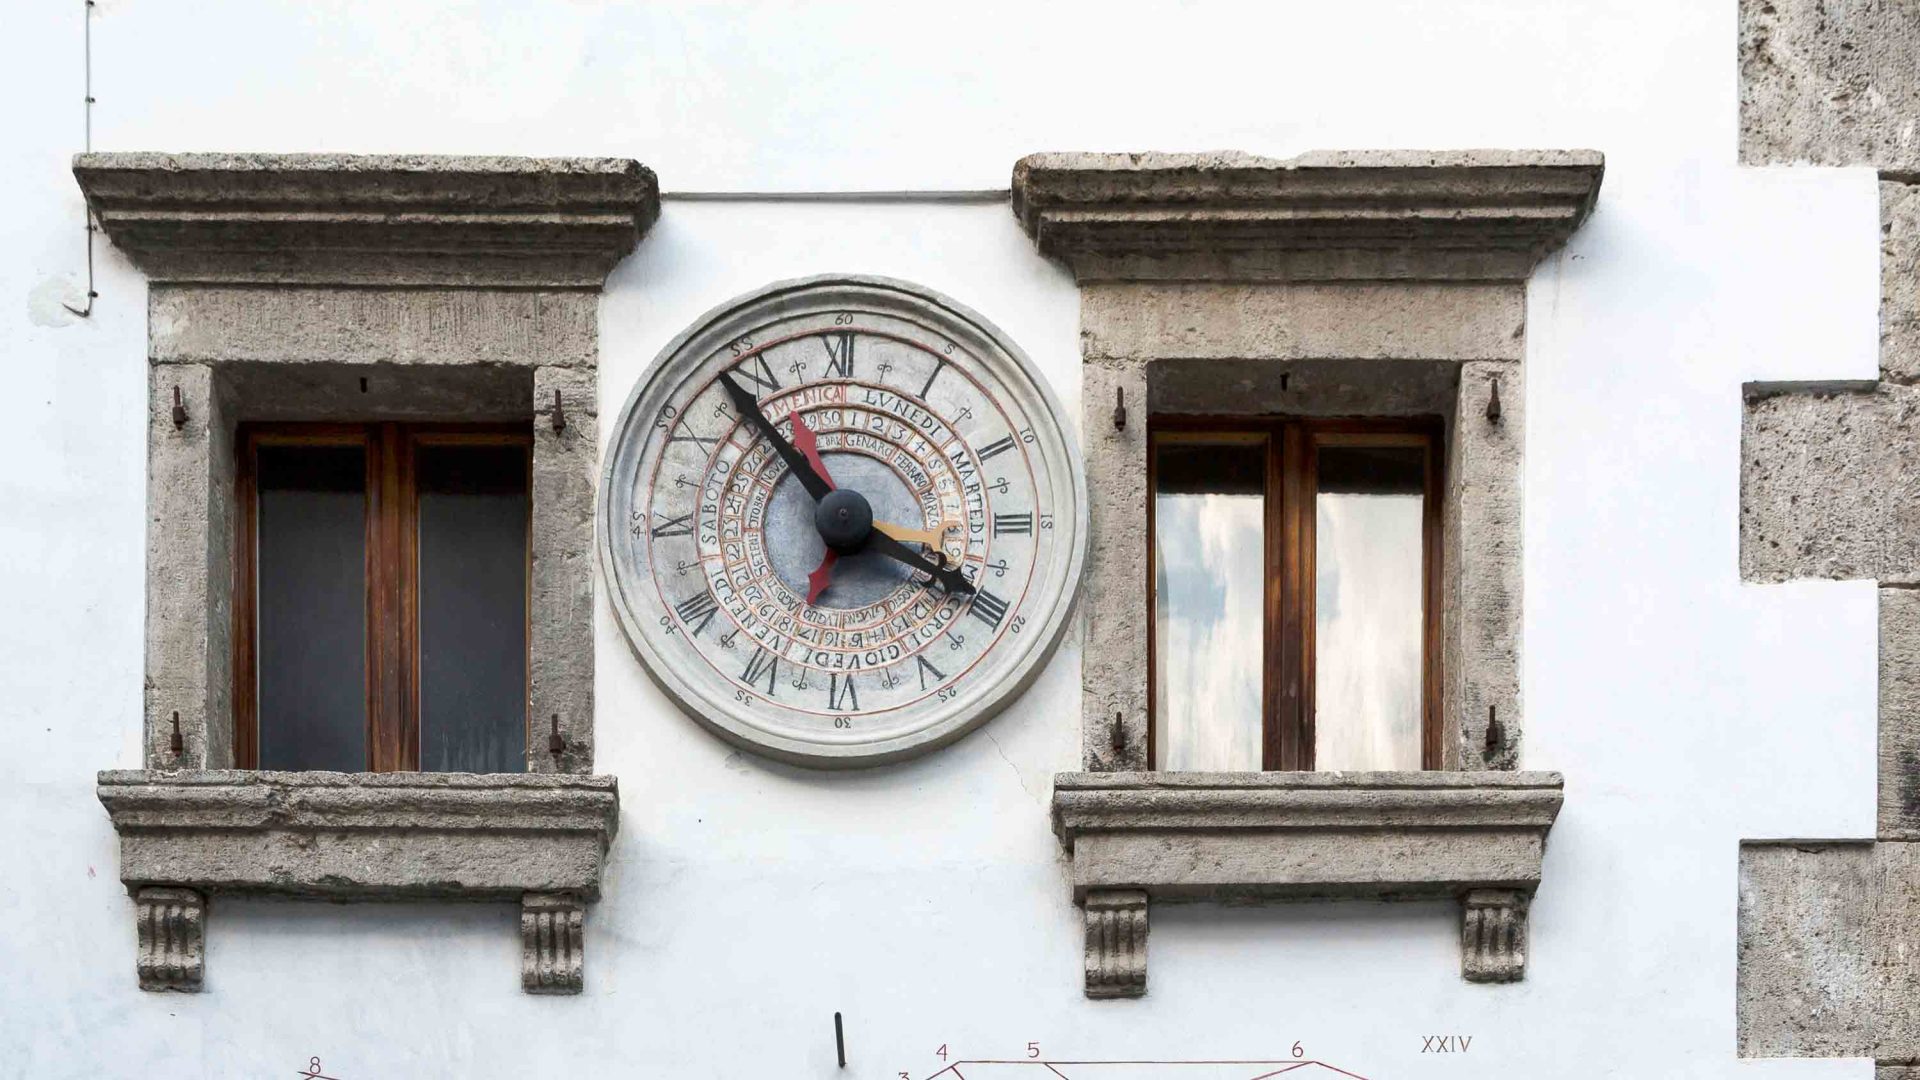 What makes Pesariis tick? The Italian town where clocks rule